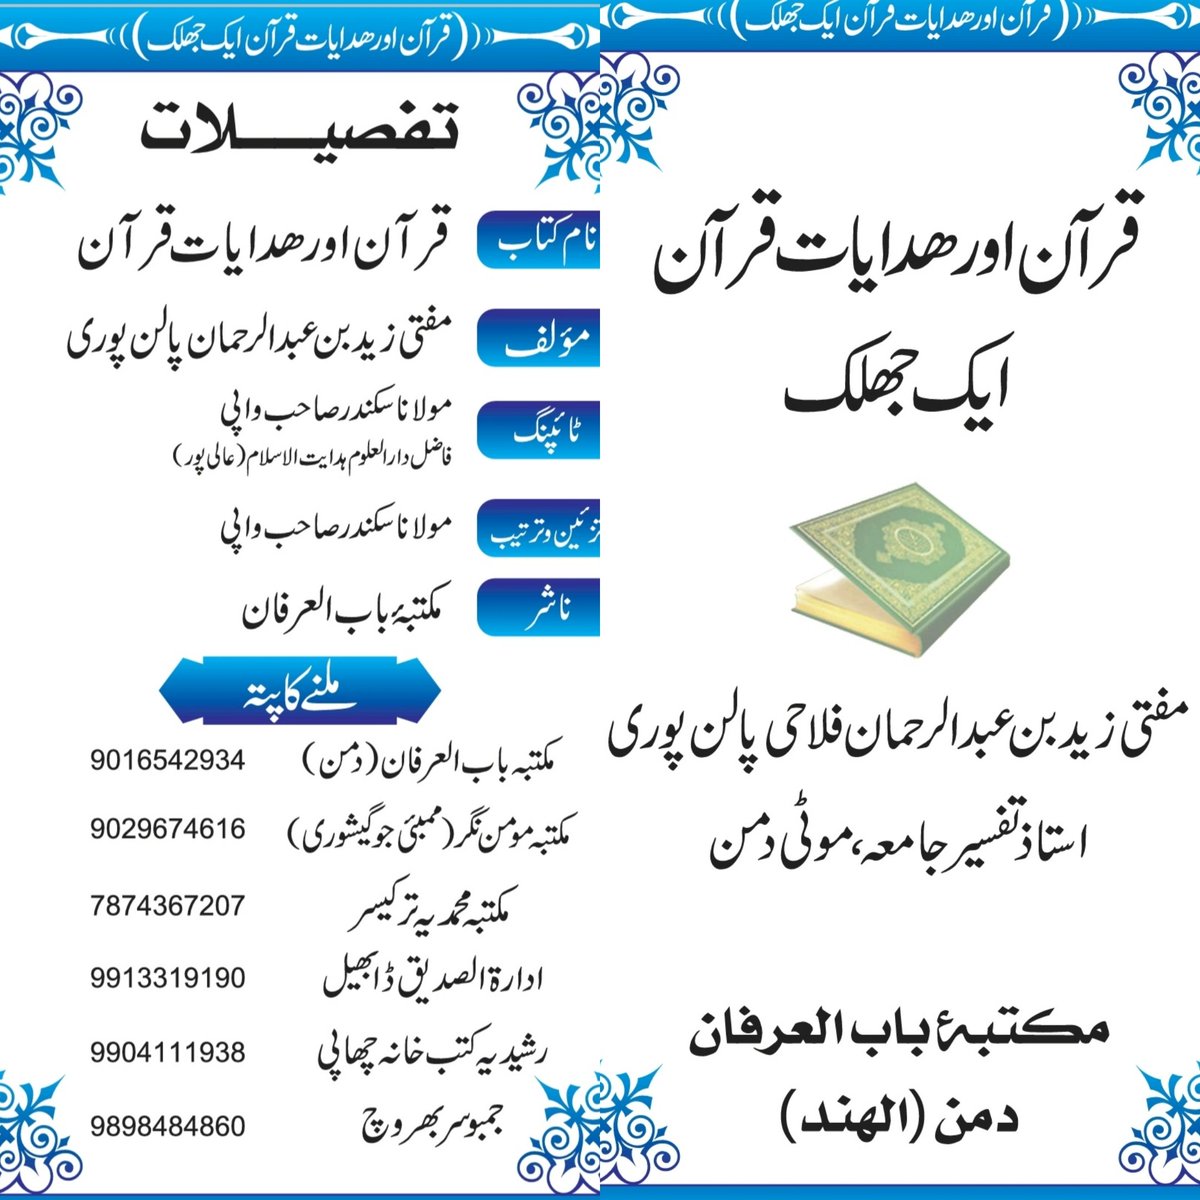 Quraan or Hidayaat Quraan Ek Jhalak
#book #islamicbook #muftizaidpalanpuri 
7977498750